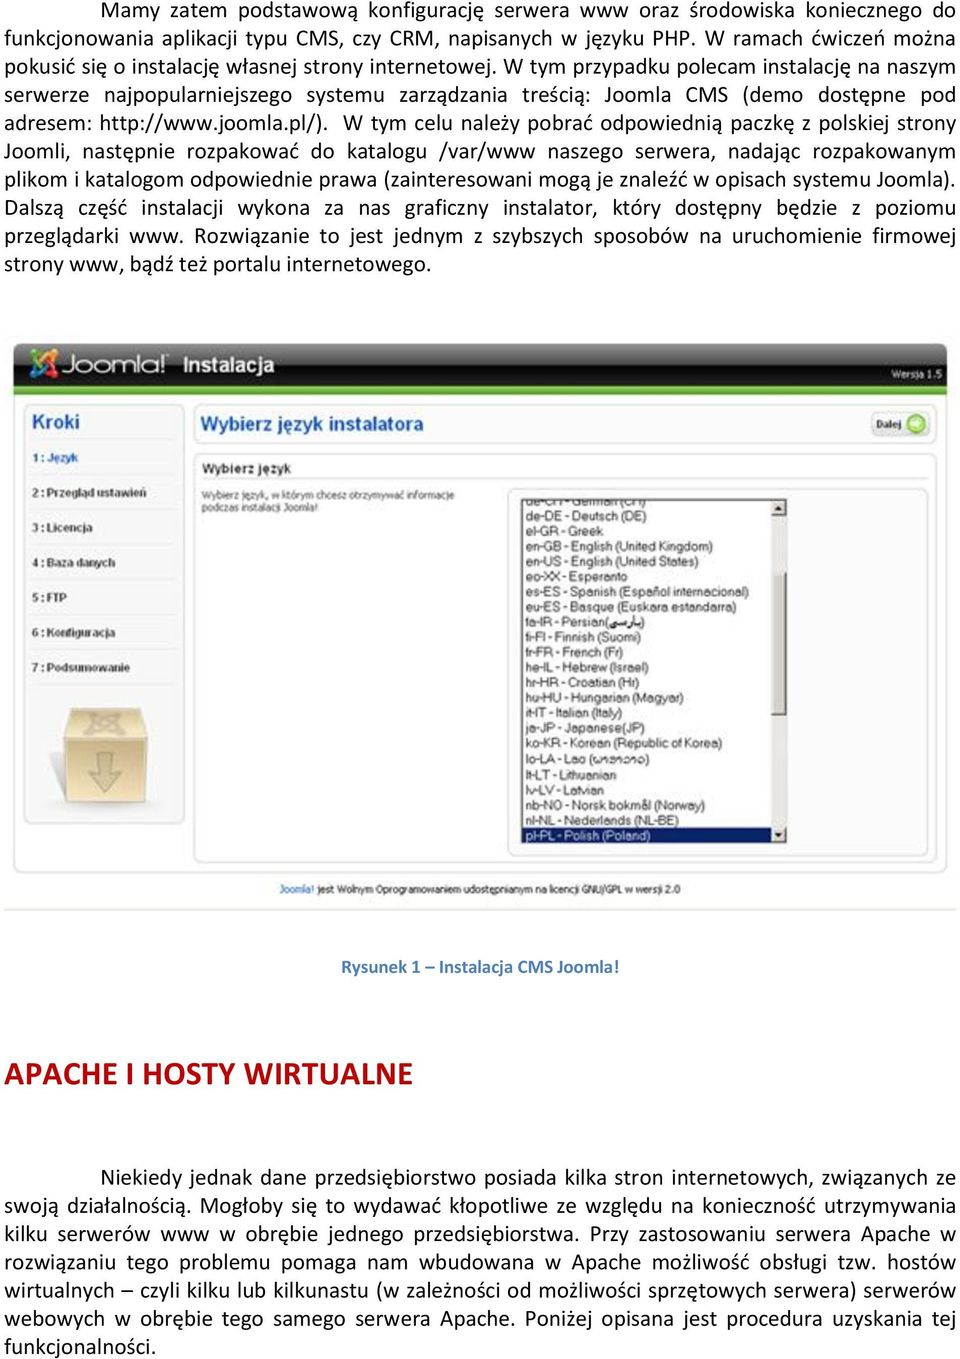 W tym przypadku polecam instalację na naszym serwerze najpopularniejszego systemu zarządzania treścią: Joomla CMS (demo dostępne pod adresem: http://www.joomla.pl/).